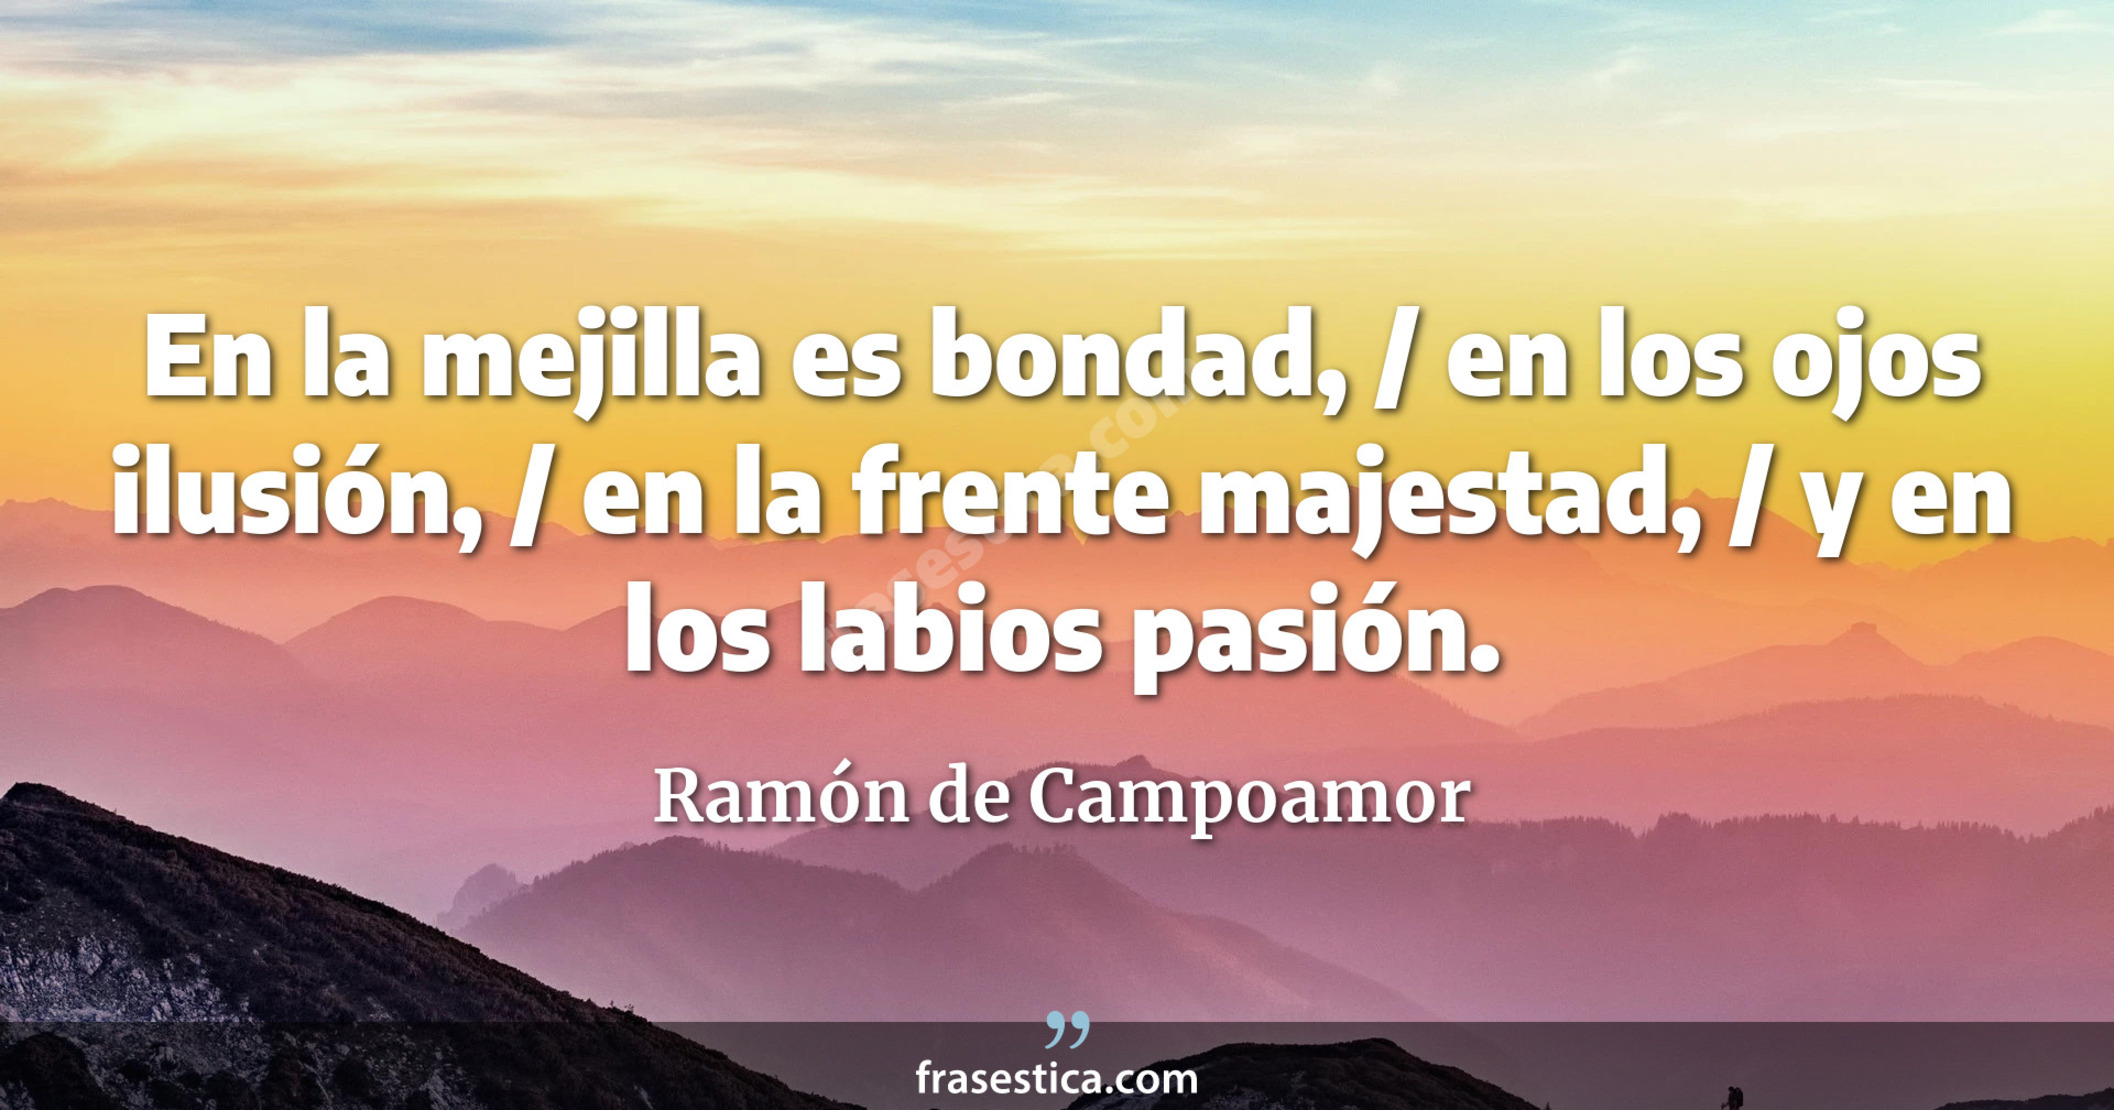 En la mejilla es bondad, / en los ojos ilusión, / en la frente majestad, / y en los labios pasión. - Ramón de Campoamor